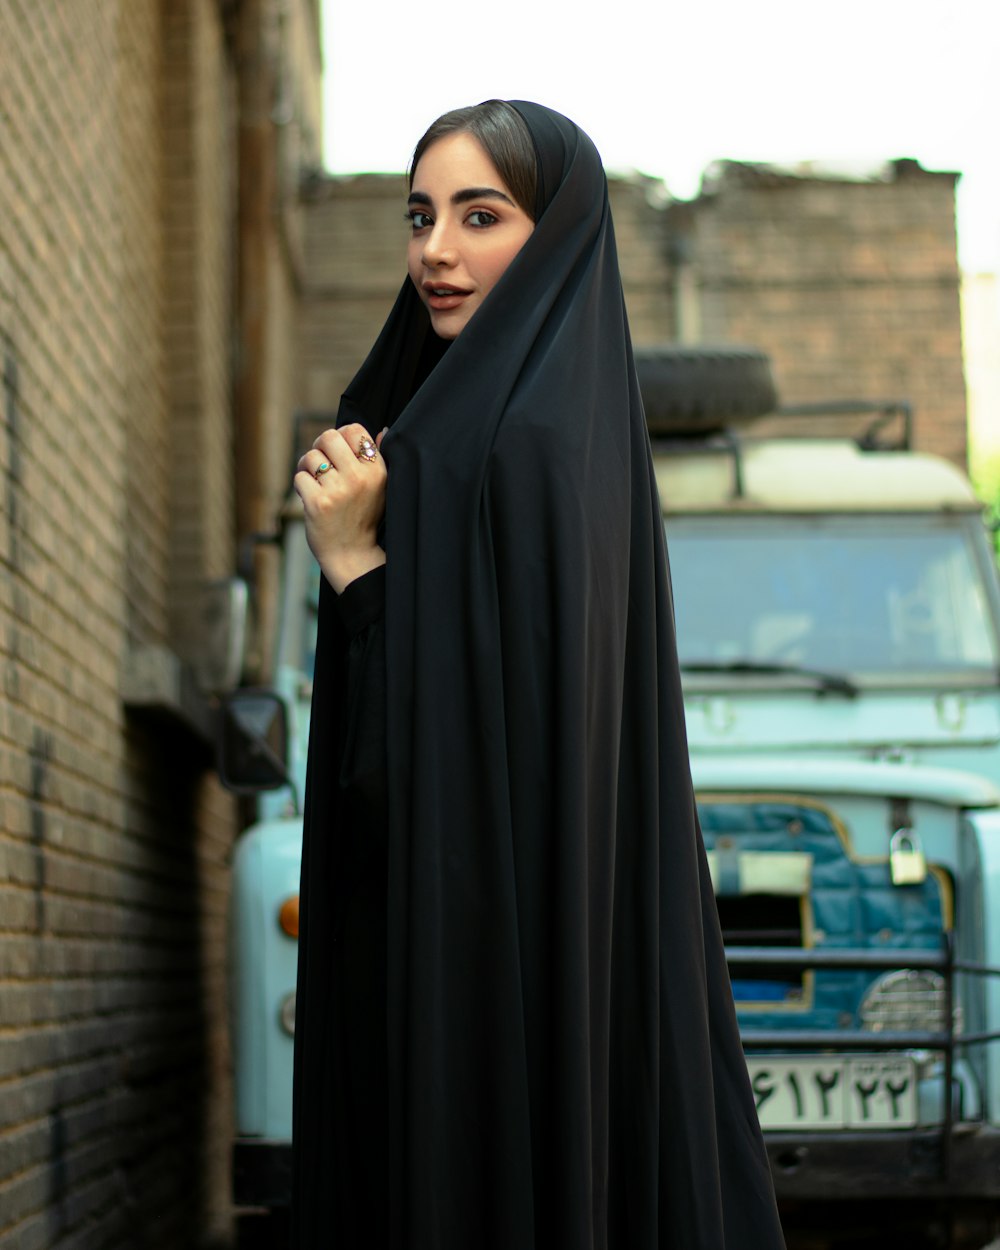 昼間、建物の近くに立っている黒いヒジャブをかぶった女性